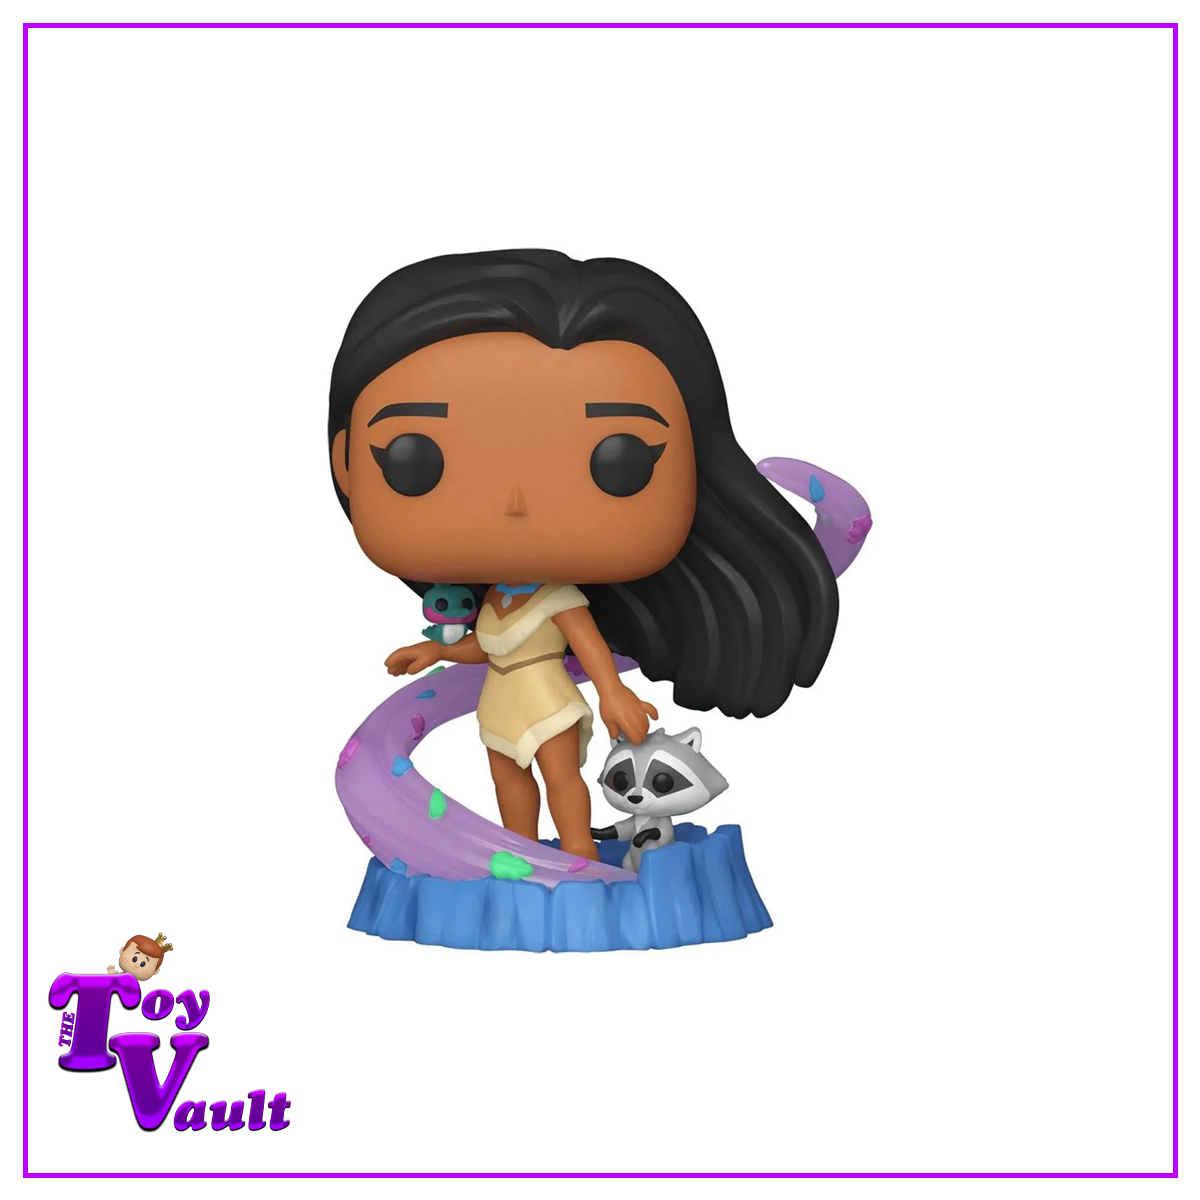 Funko Pop! Disney Princess - Pocahontas #1017